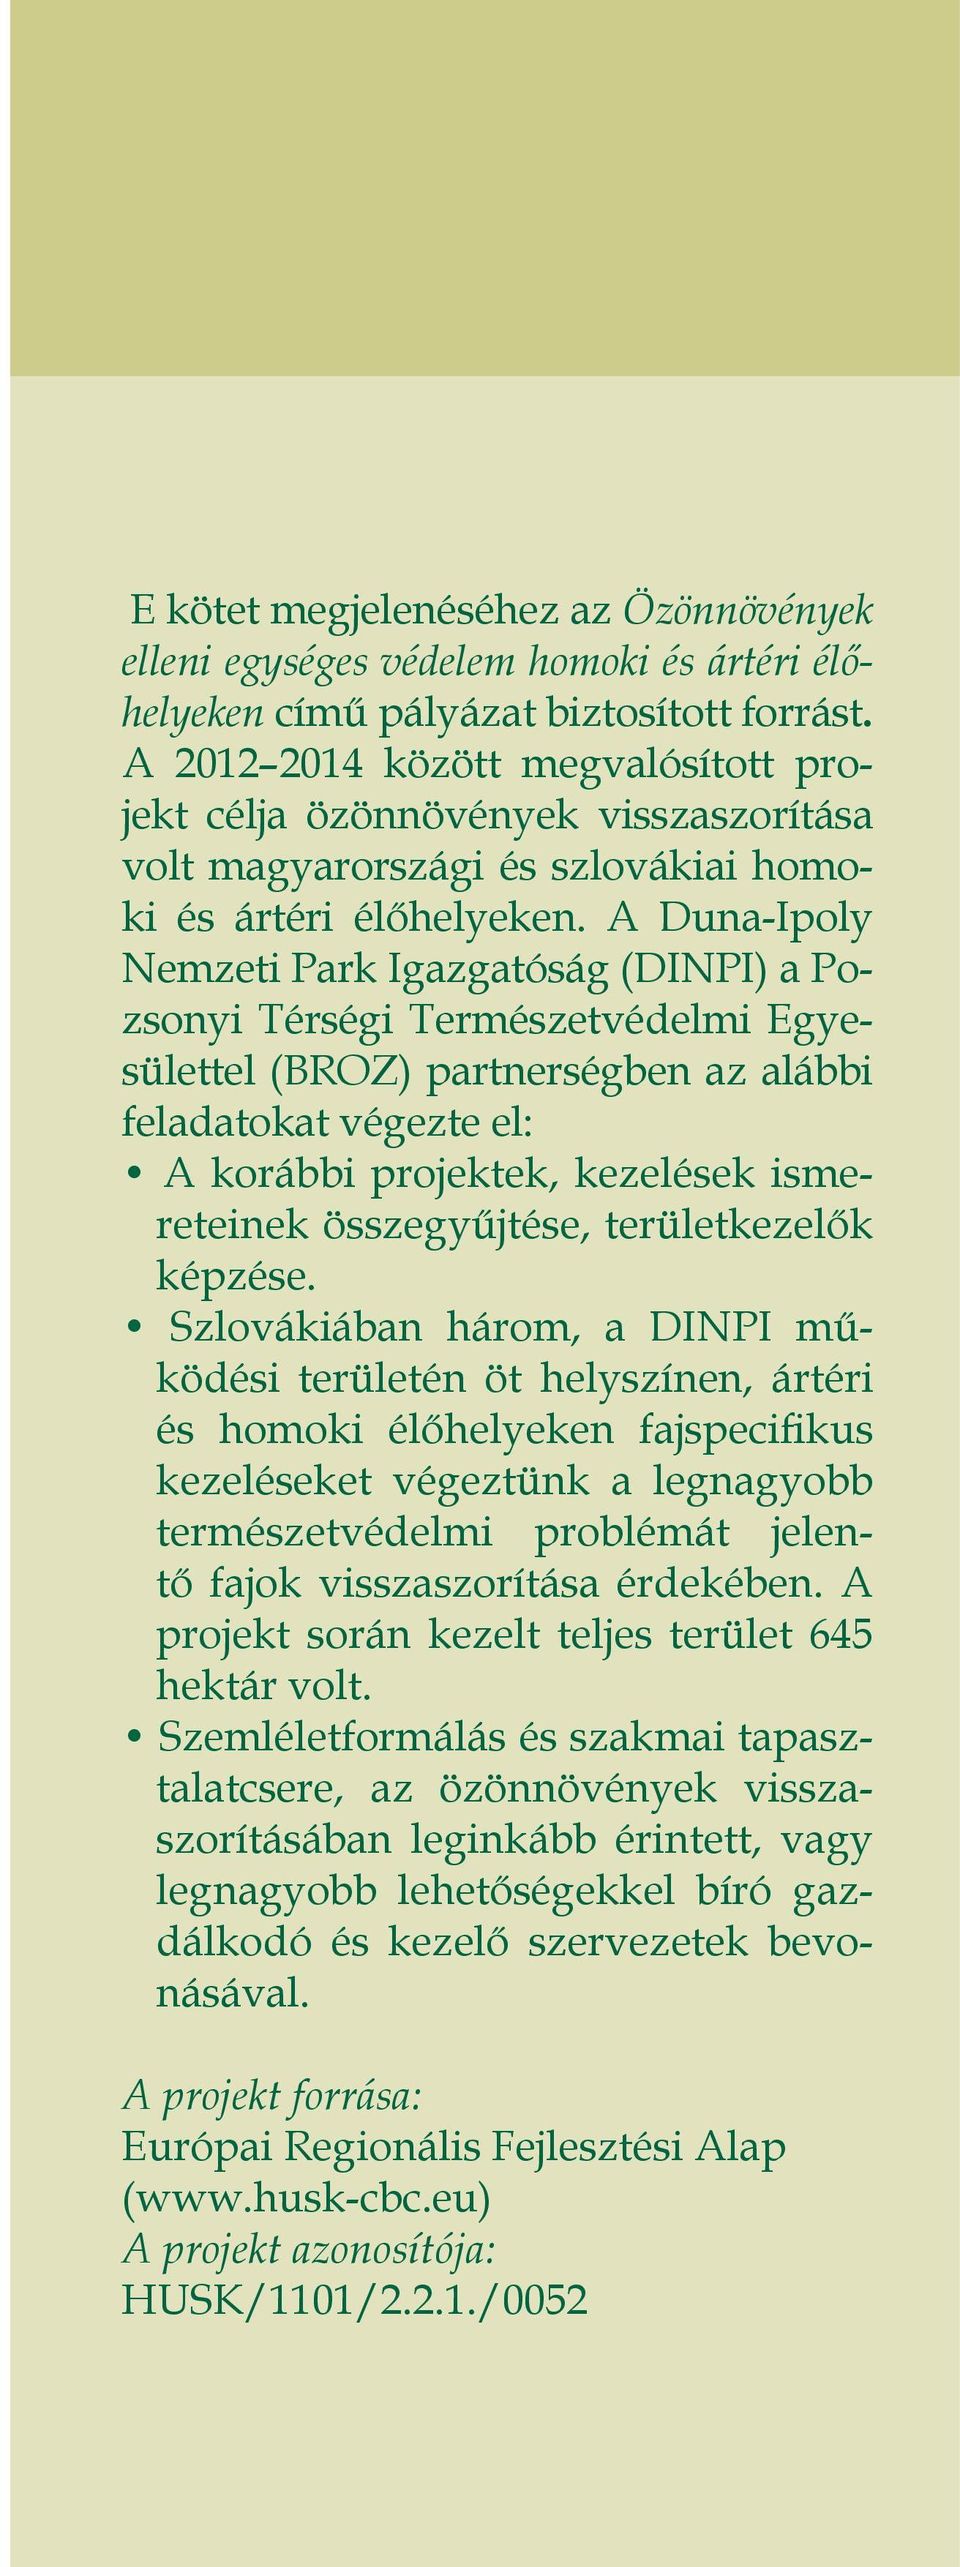 A Duna-Ipoly Nemzeti Park Igazgatóság (DINPI) a Pozsonyi Térségi Természetvédelmi Egyesülettel (BROZ) partnerségben az alábbi feladatokat végezte el: A korábbi projektek, kezelések ismereteinek